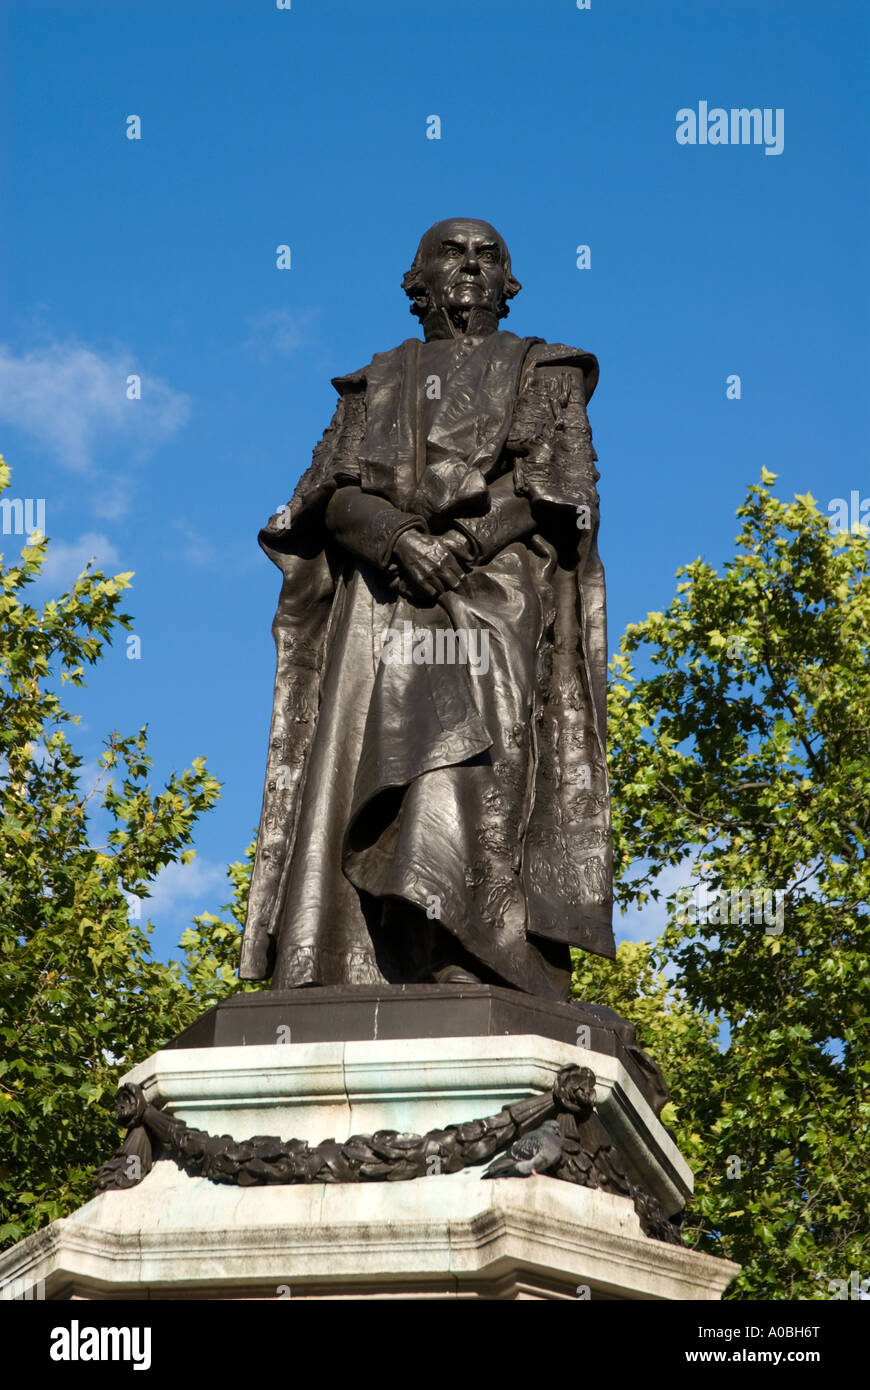 Statue of William Gladstone on the Strand, London England UK Stock Photo